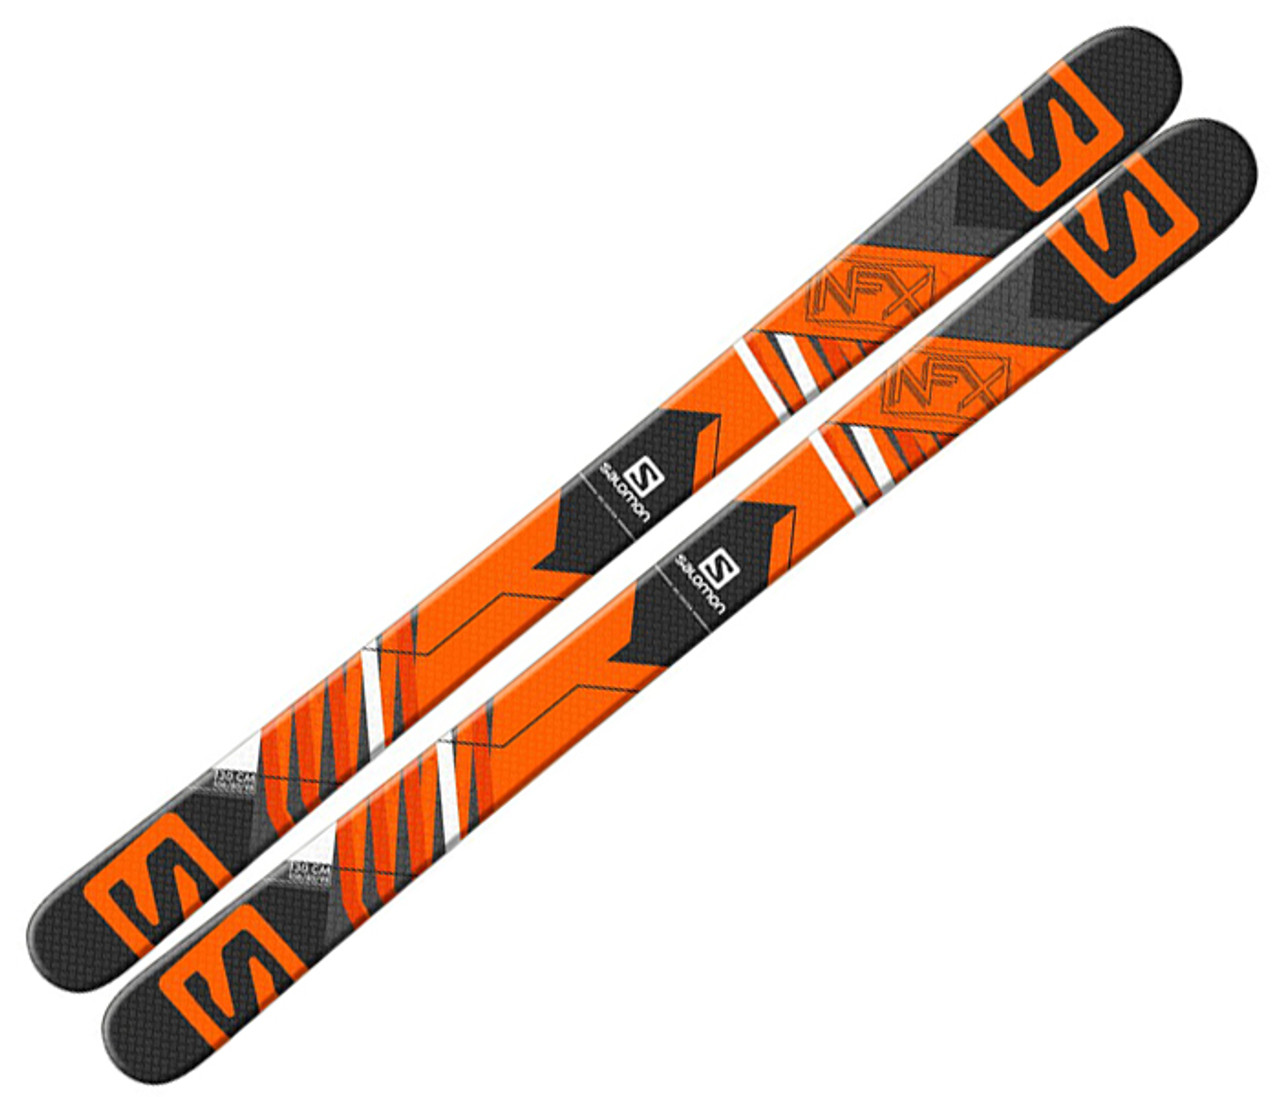 Salomon NFX Jr Skis 2015